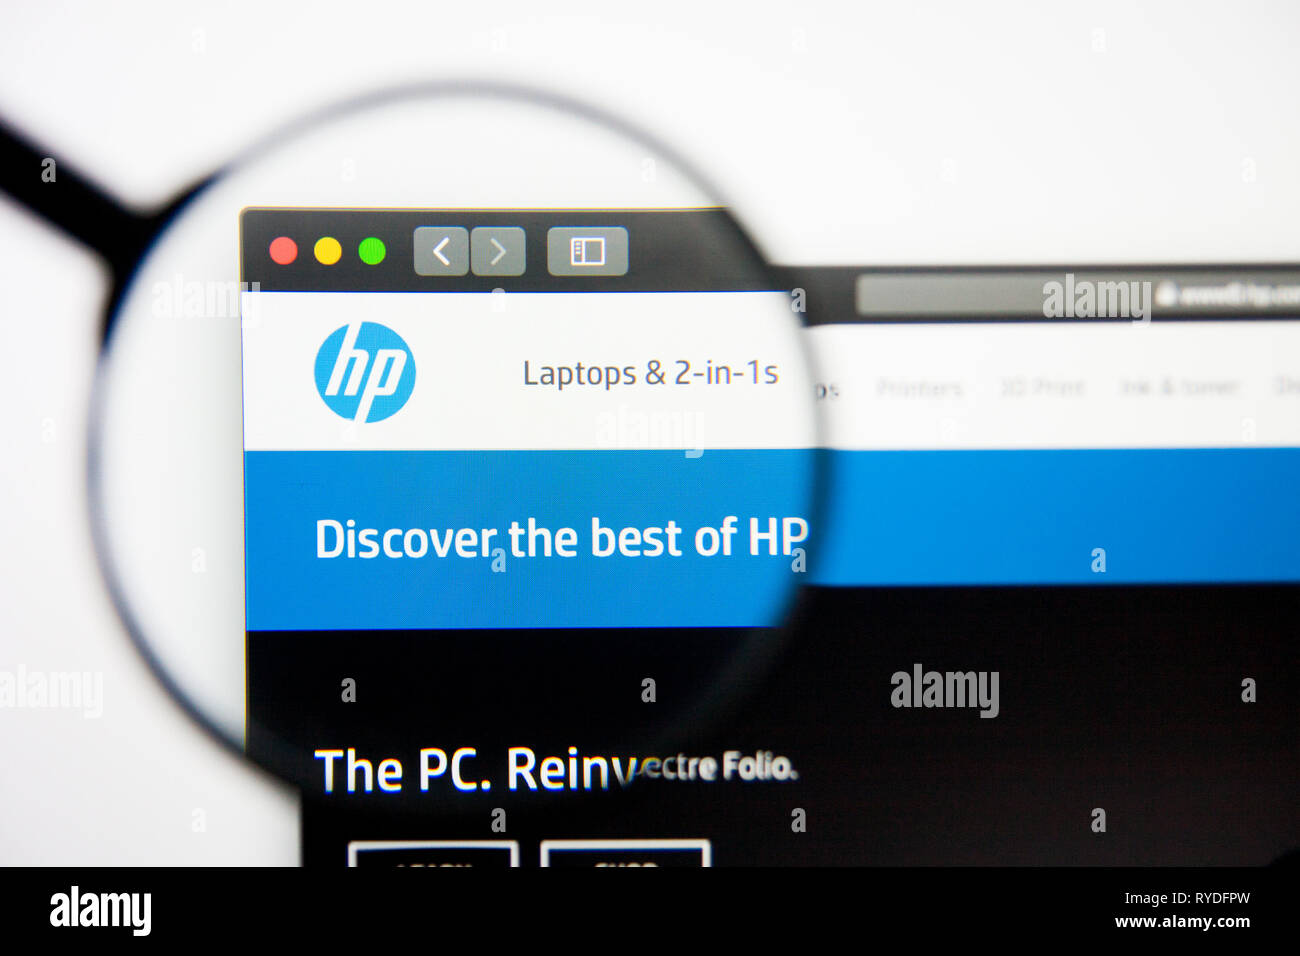 Los Angeles, Californie, USA - 5 mars 2019 : HP accueil du site. Logo HP visible sur l'écran d'affichage, de rédaction d'illustration Banque D'Images